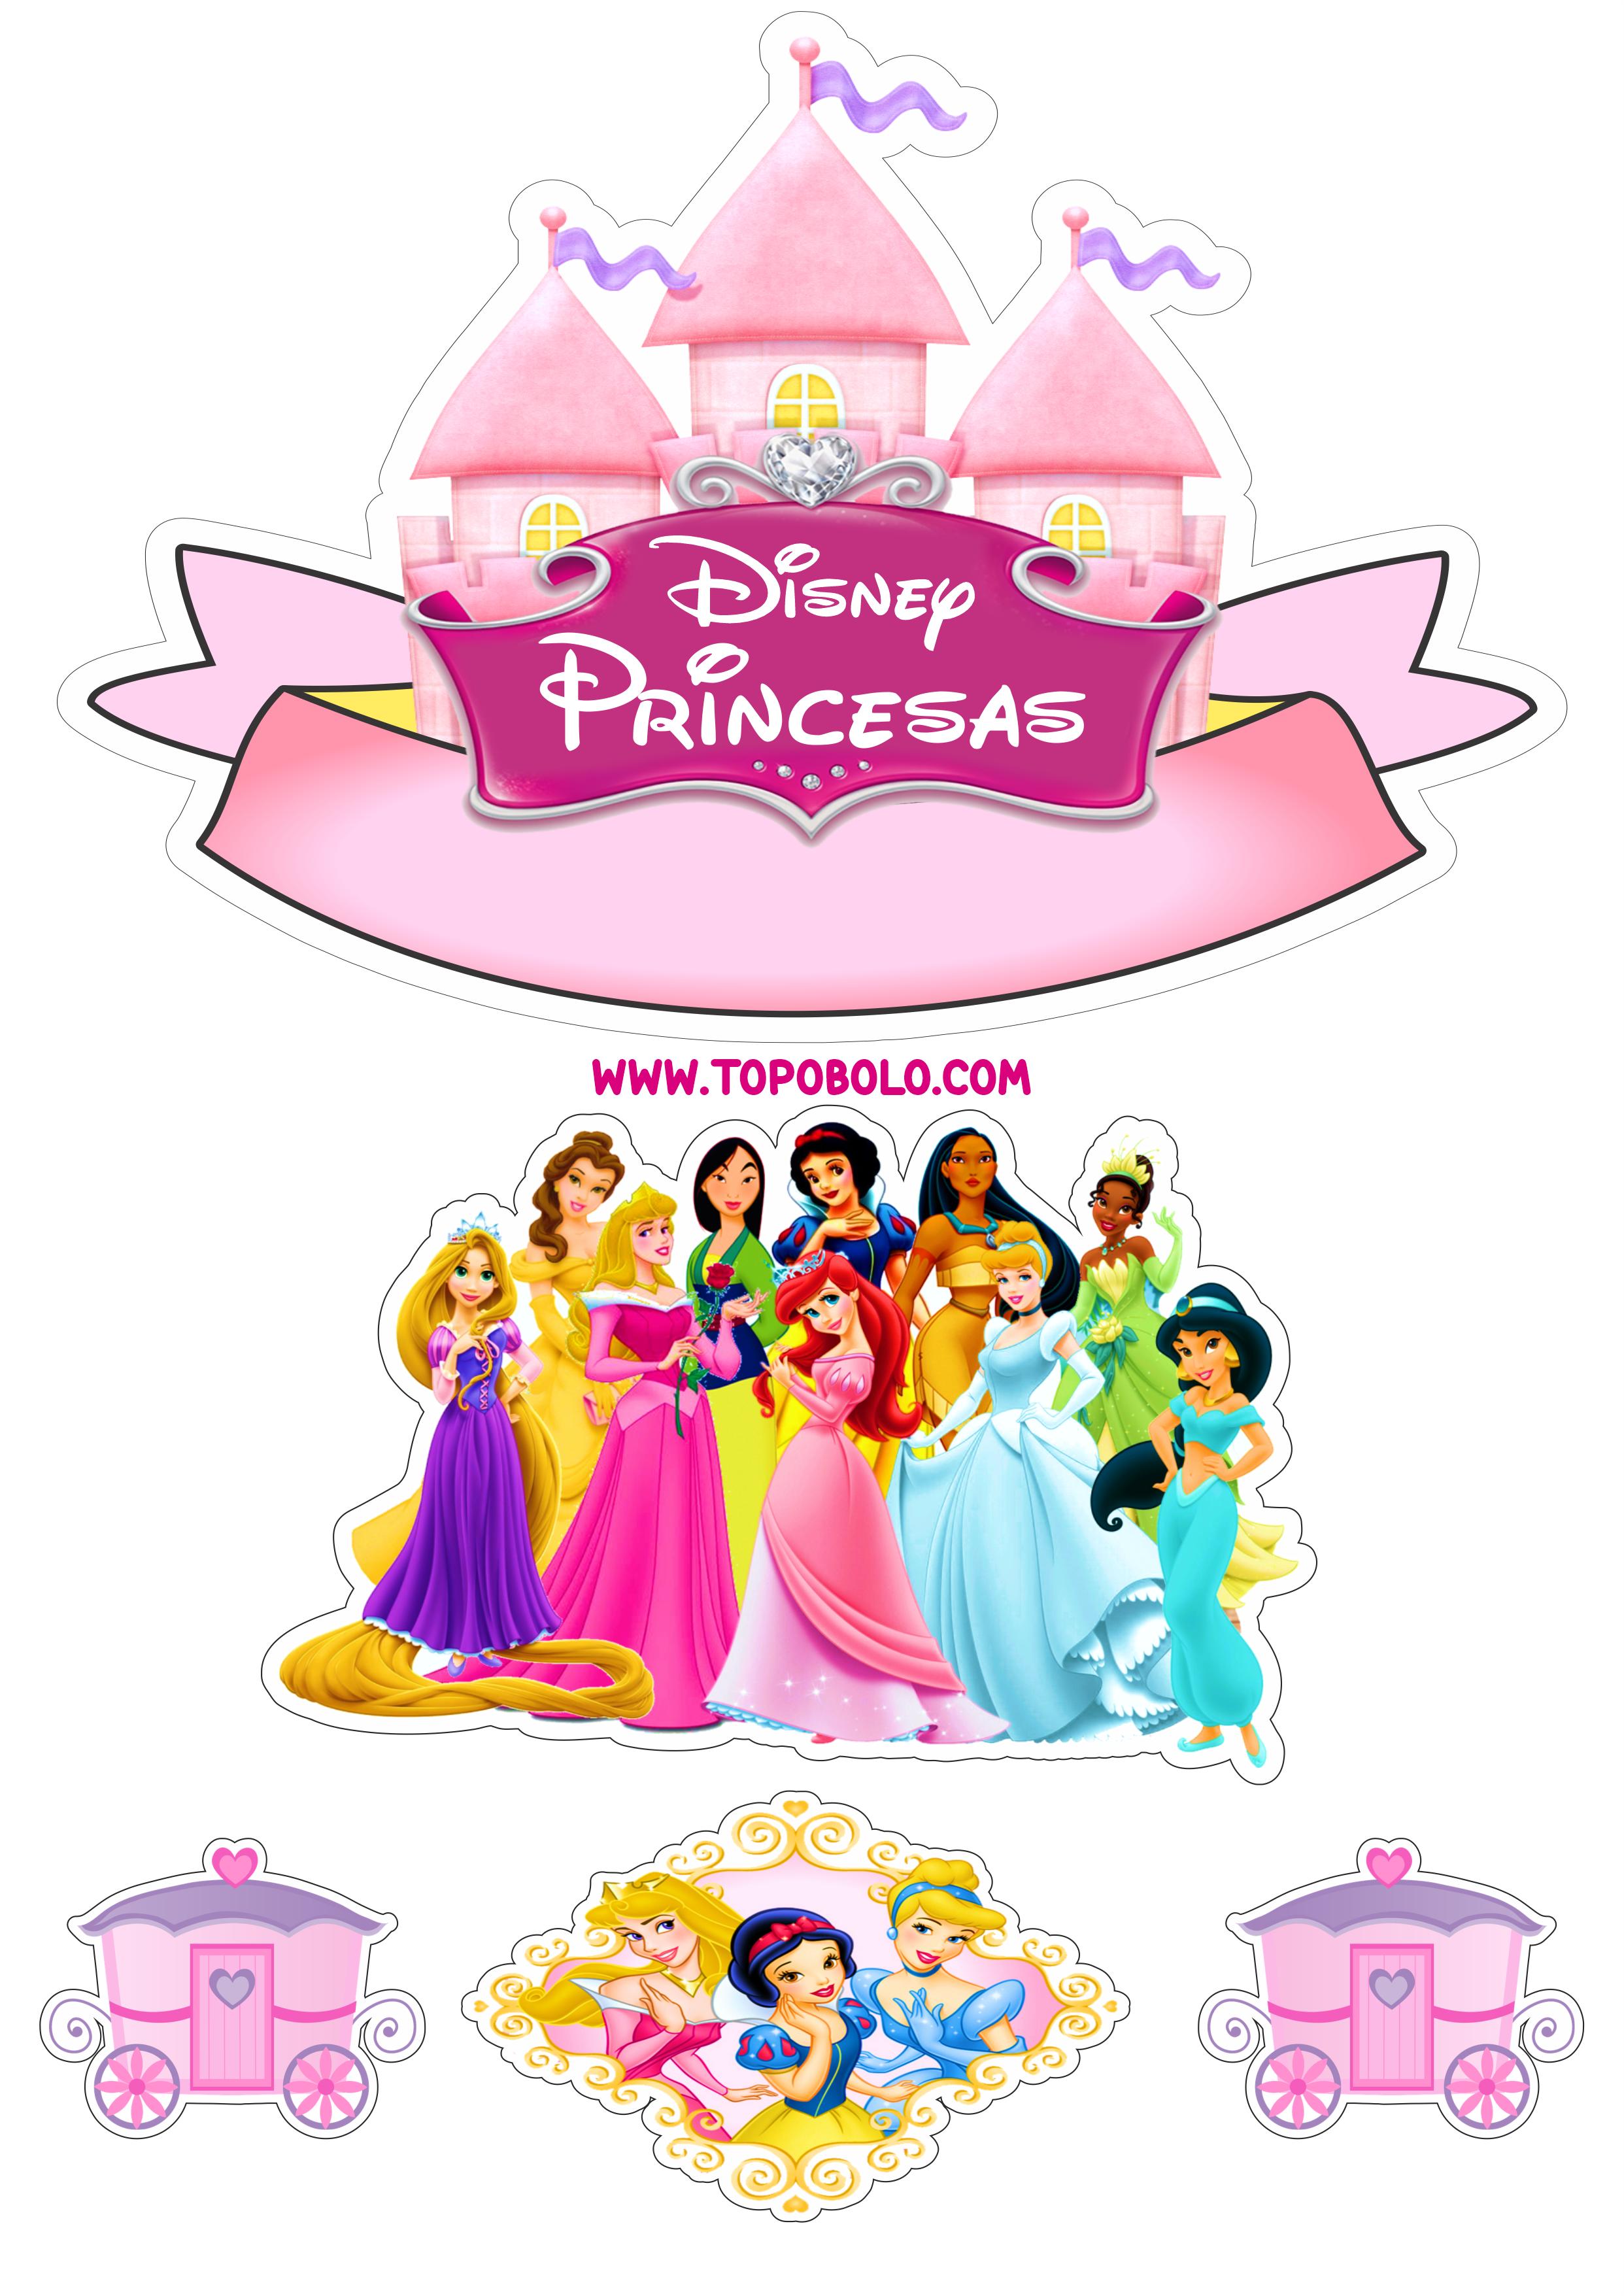 Princesas Disney topo de bolo pronto para imprimir aniversário infantil papelaria criativa assistir online png